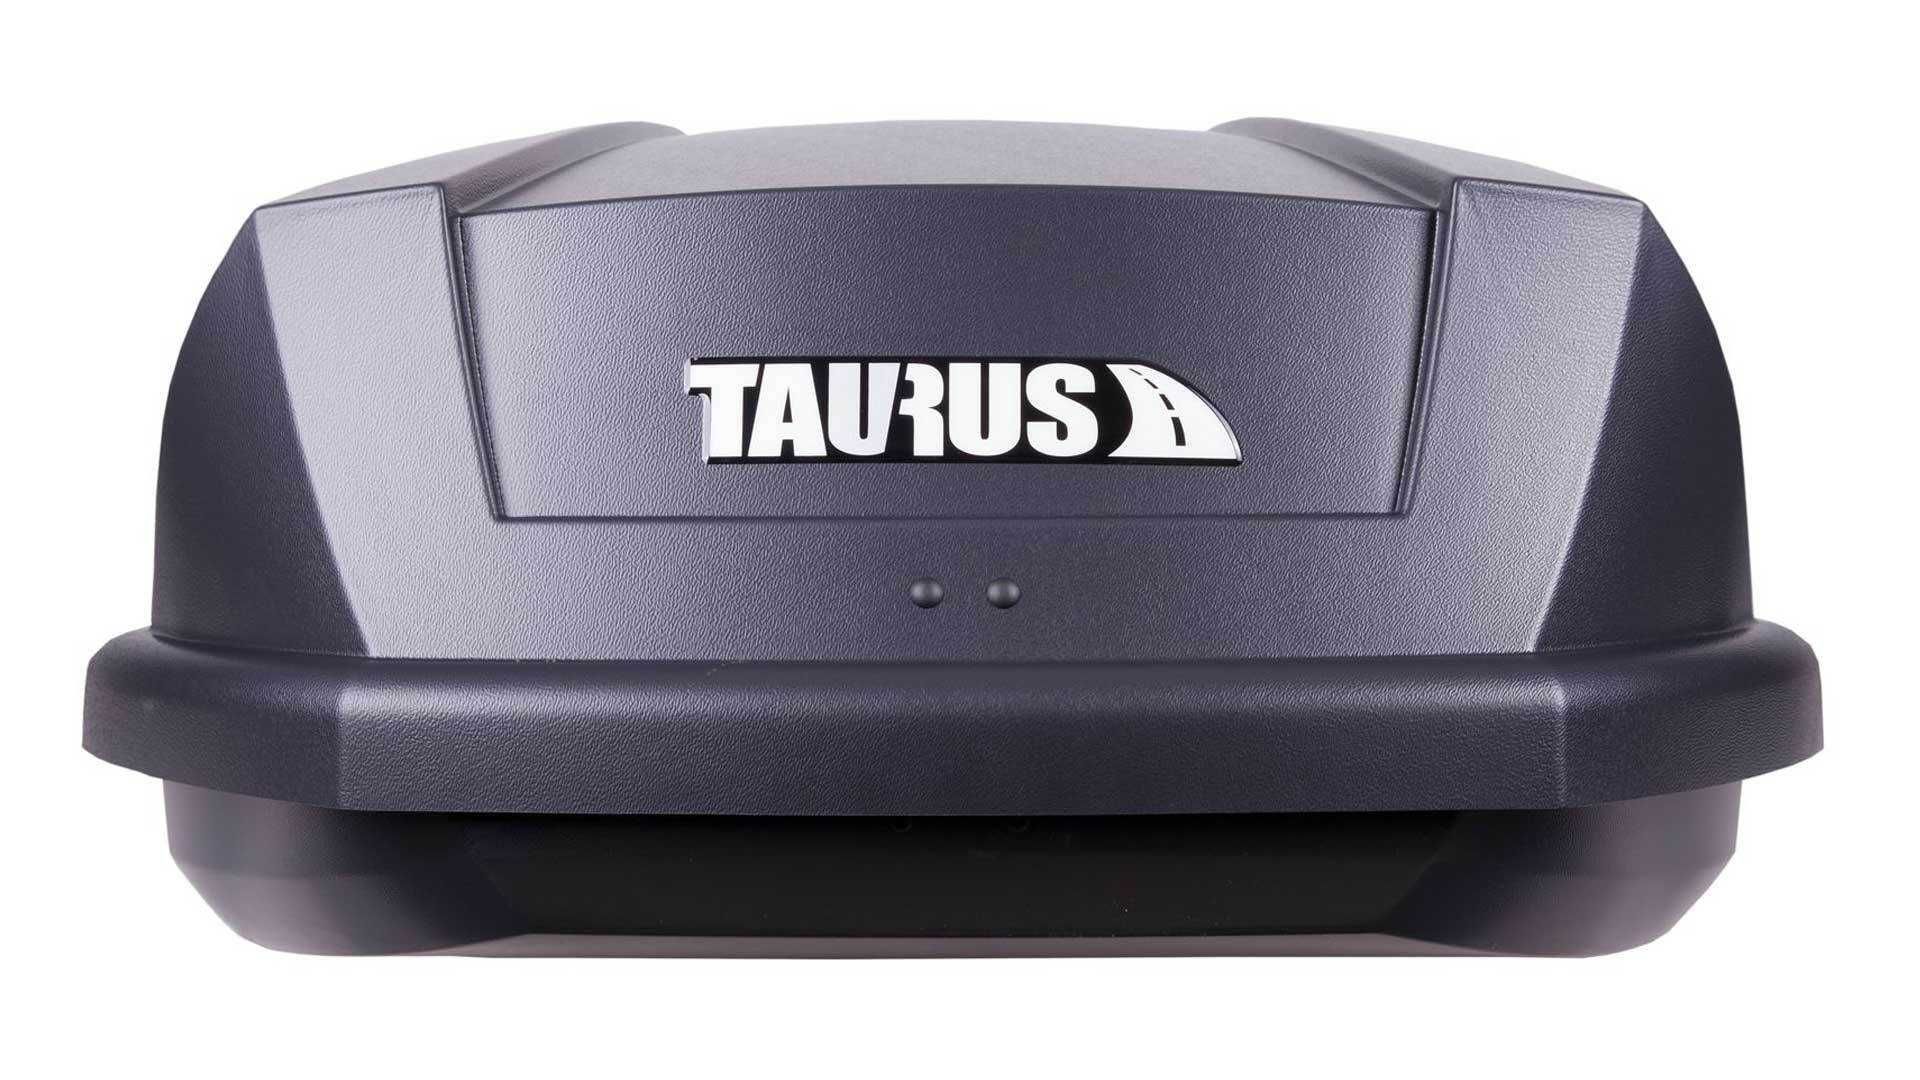 Box dachowy Taurus Adventure 300 czarny matowy fv gw wysyłka gratis